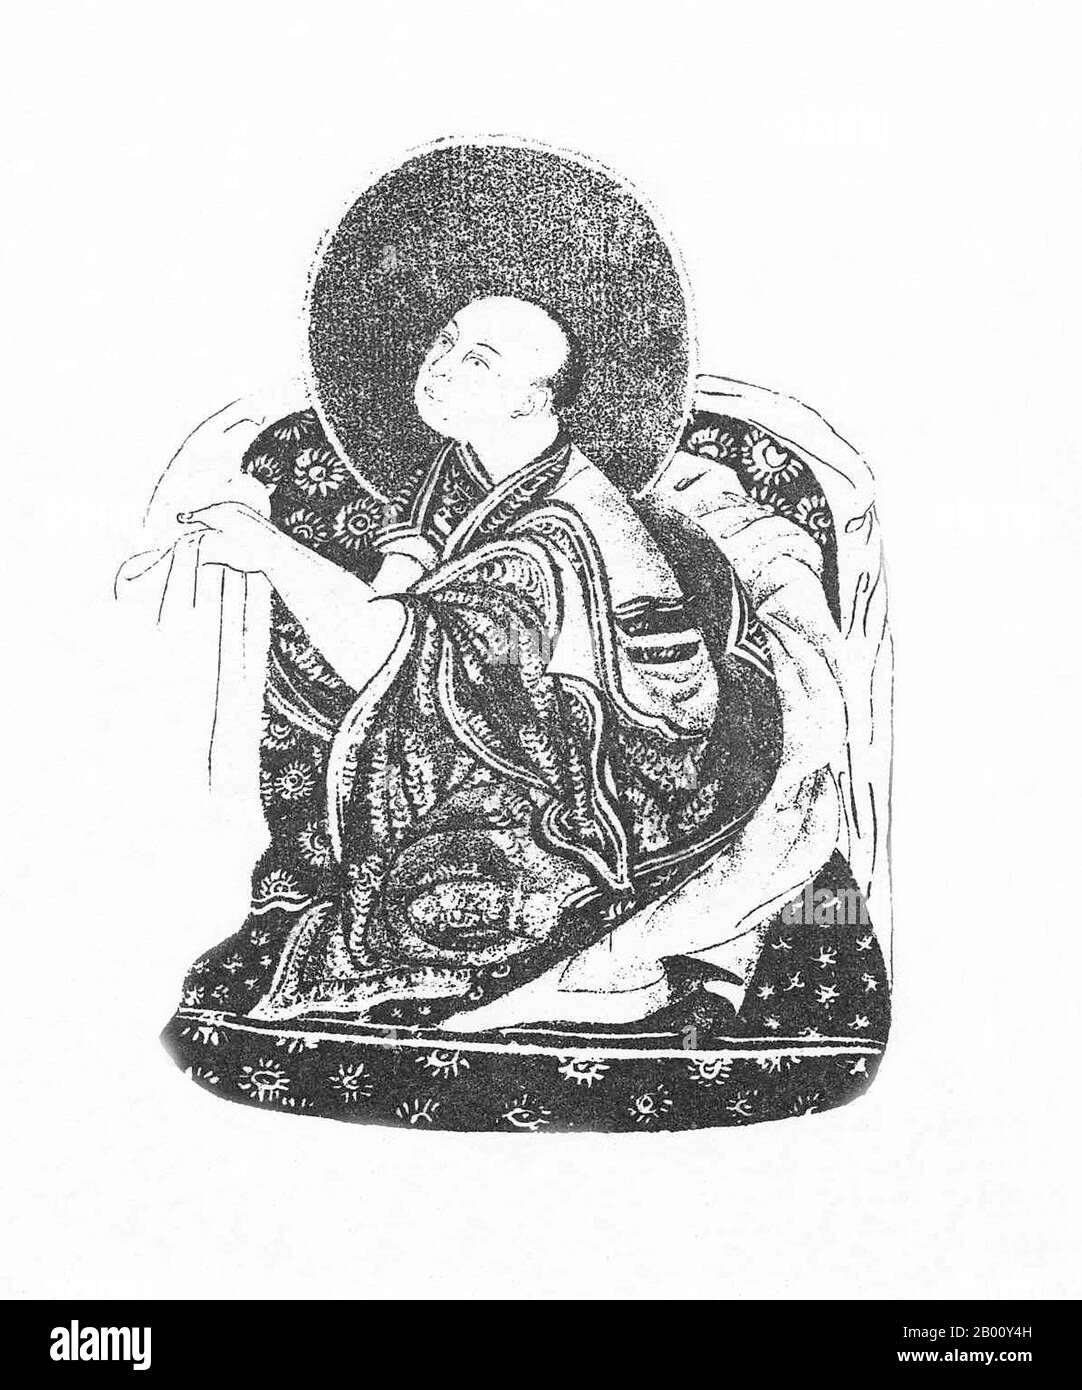 China/Tibet: Khedrup Gelek Pelzang, 1. Panchen Lama (1385-1438), c. 1882. Khedrup Gelek Pelzang (1385–1438), besser bekannt als Khedrup je, der 1. Panchen Lama, war einer der Hauptjünger von Lama Tsongkhapa (Gründer der Gelug-Tradition des tibetischen Buddhismus). Stockfoto